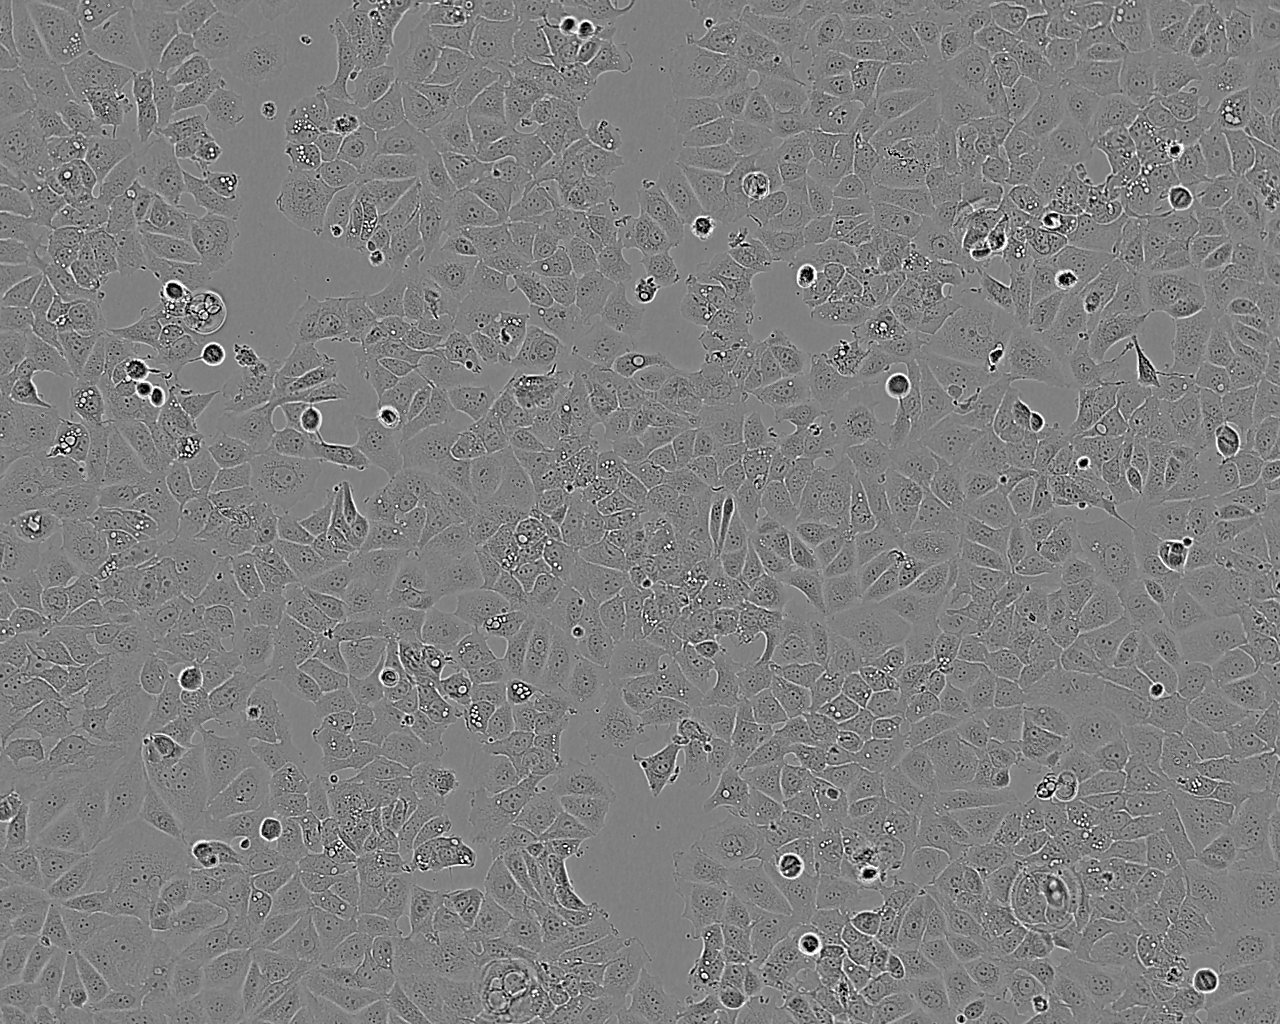 NCI-H1648细胞：人肺癌细胞系